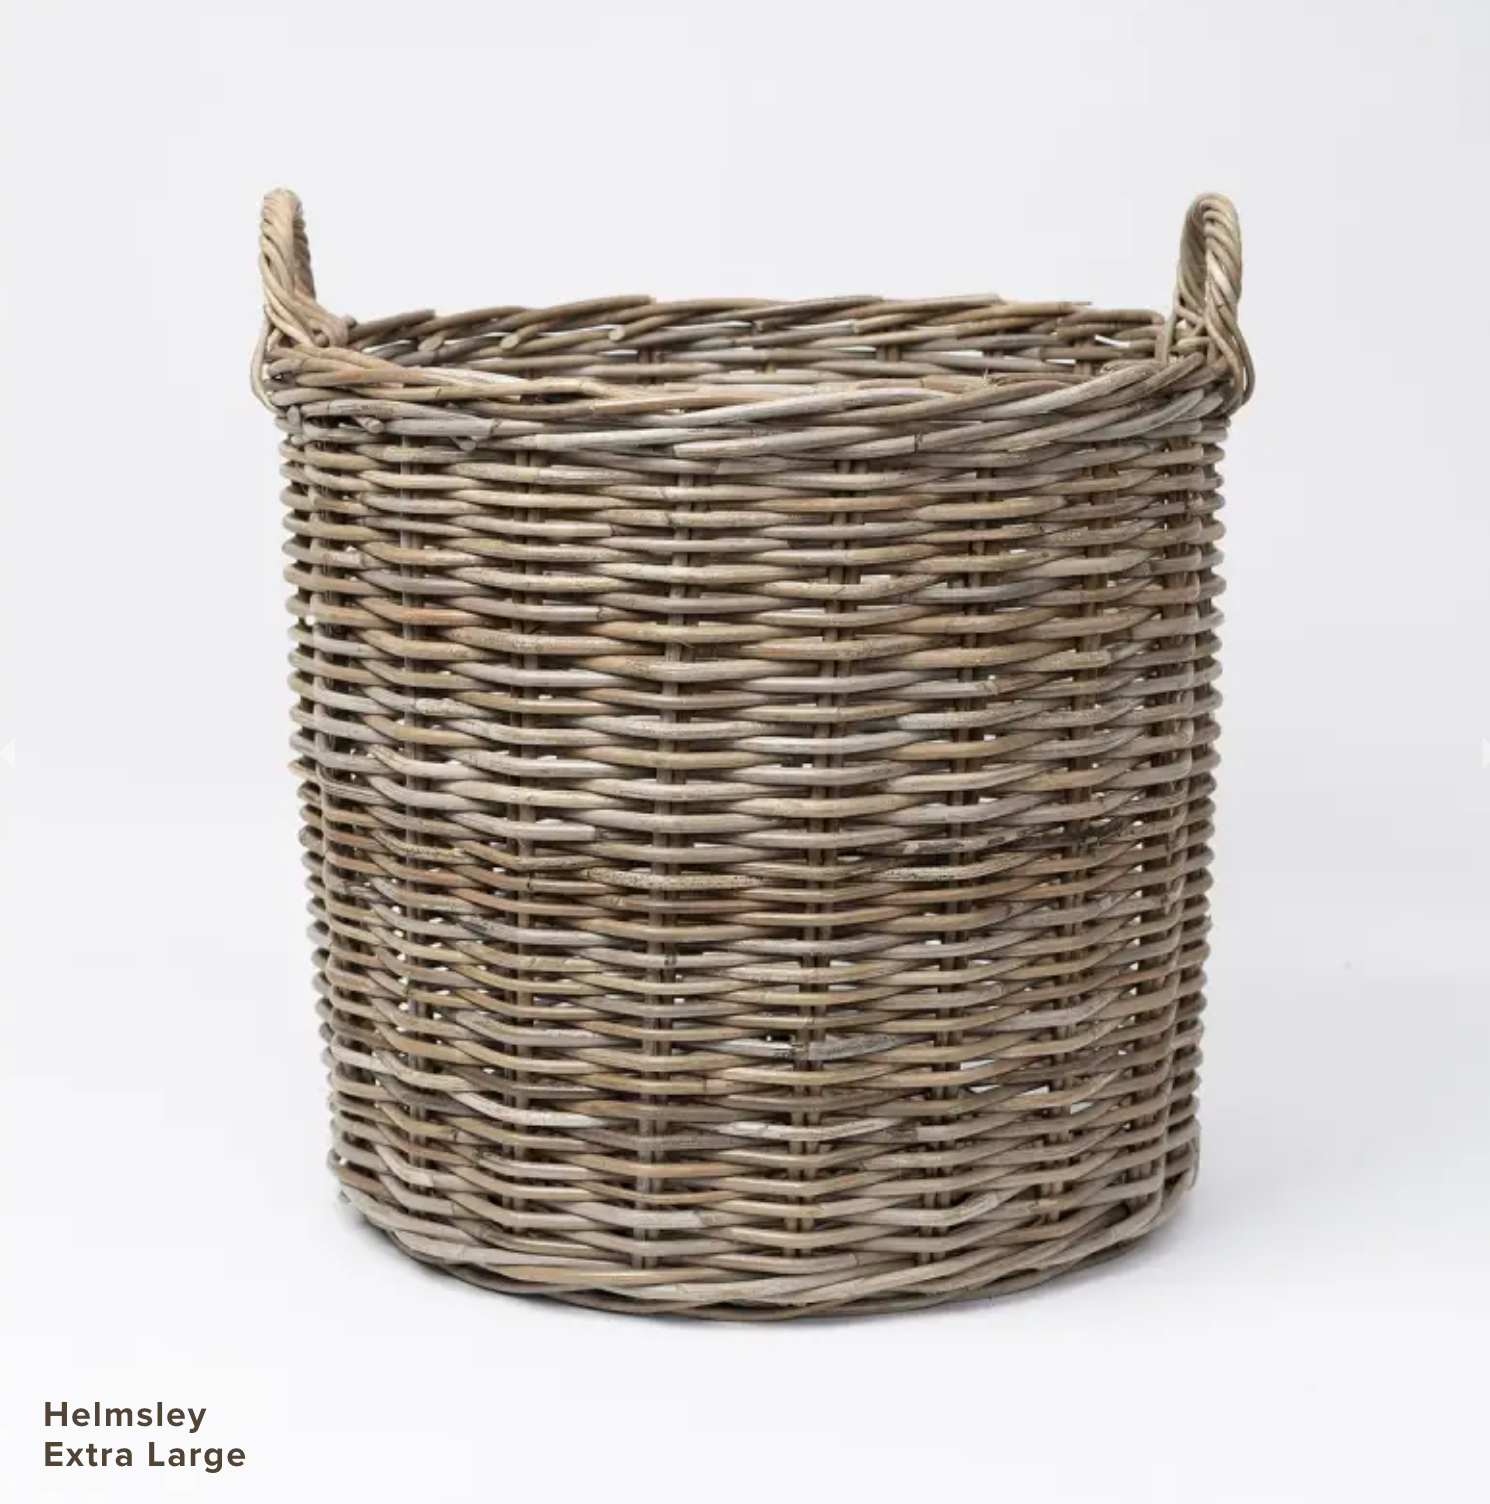 Helmsley Basket